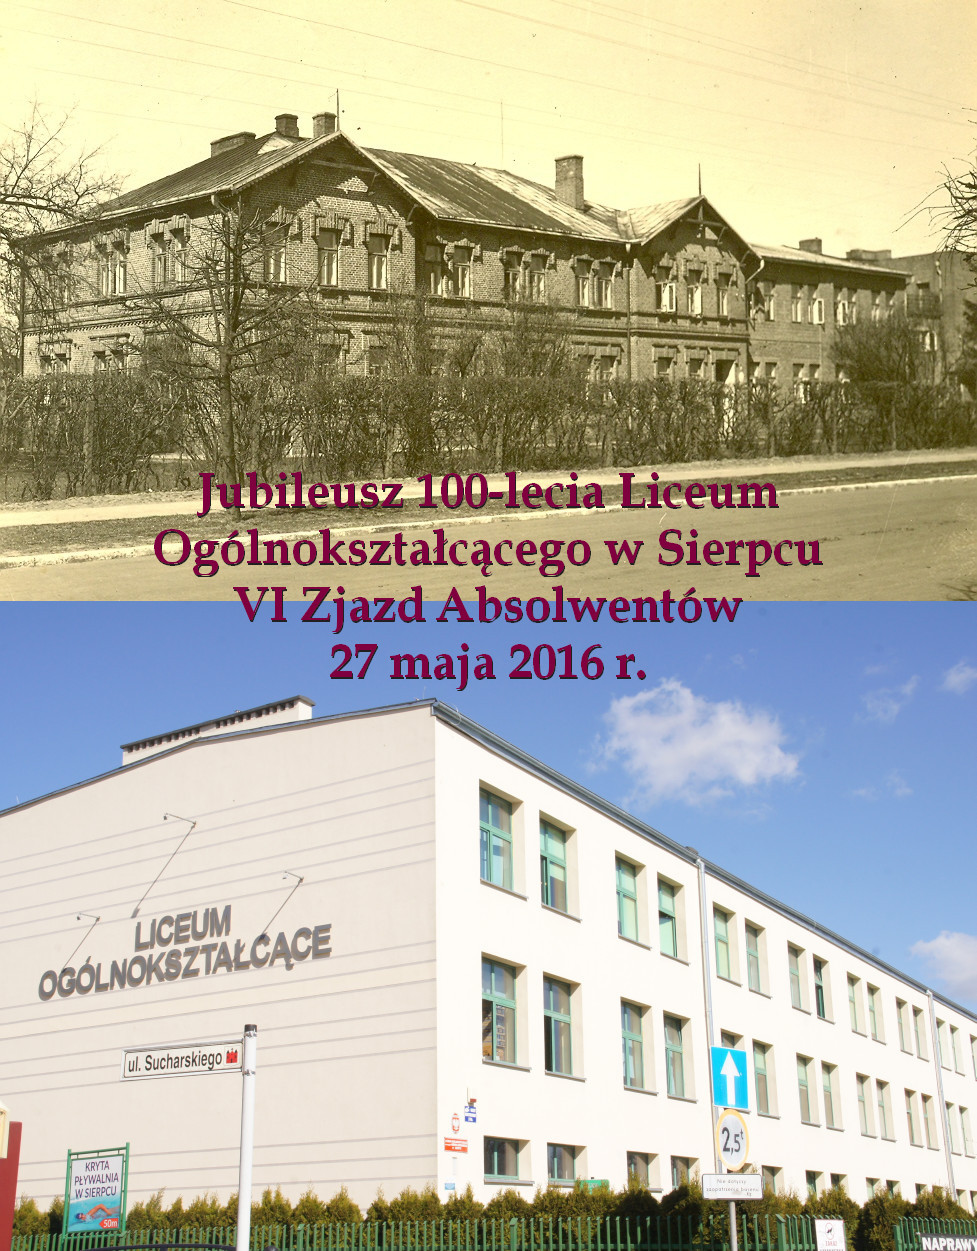 Jubileusz 100-lecia Liceum Oglnoksztaccego w Sierpcu, VI Zjazd Absolwentw 27 maja 2016 r.